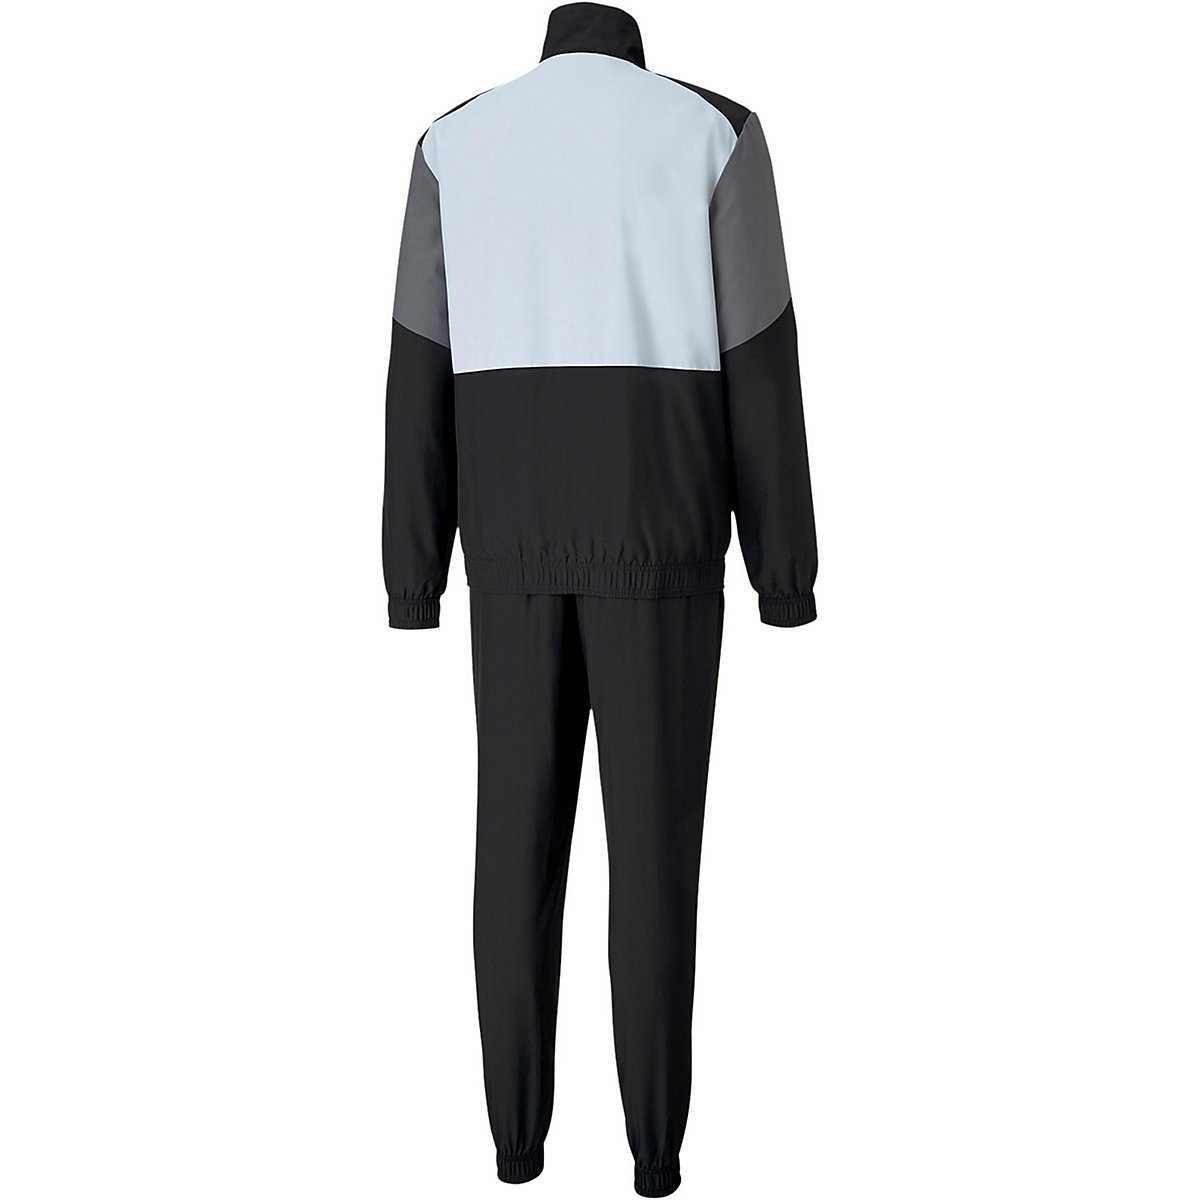 Puma CB Retro Suit Woven CL Trainigsanzug Herren Fußball Sportanzug 581598 01 schwarz